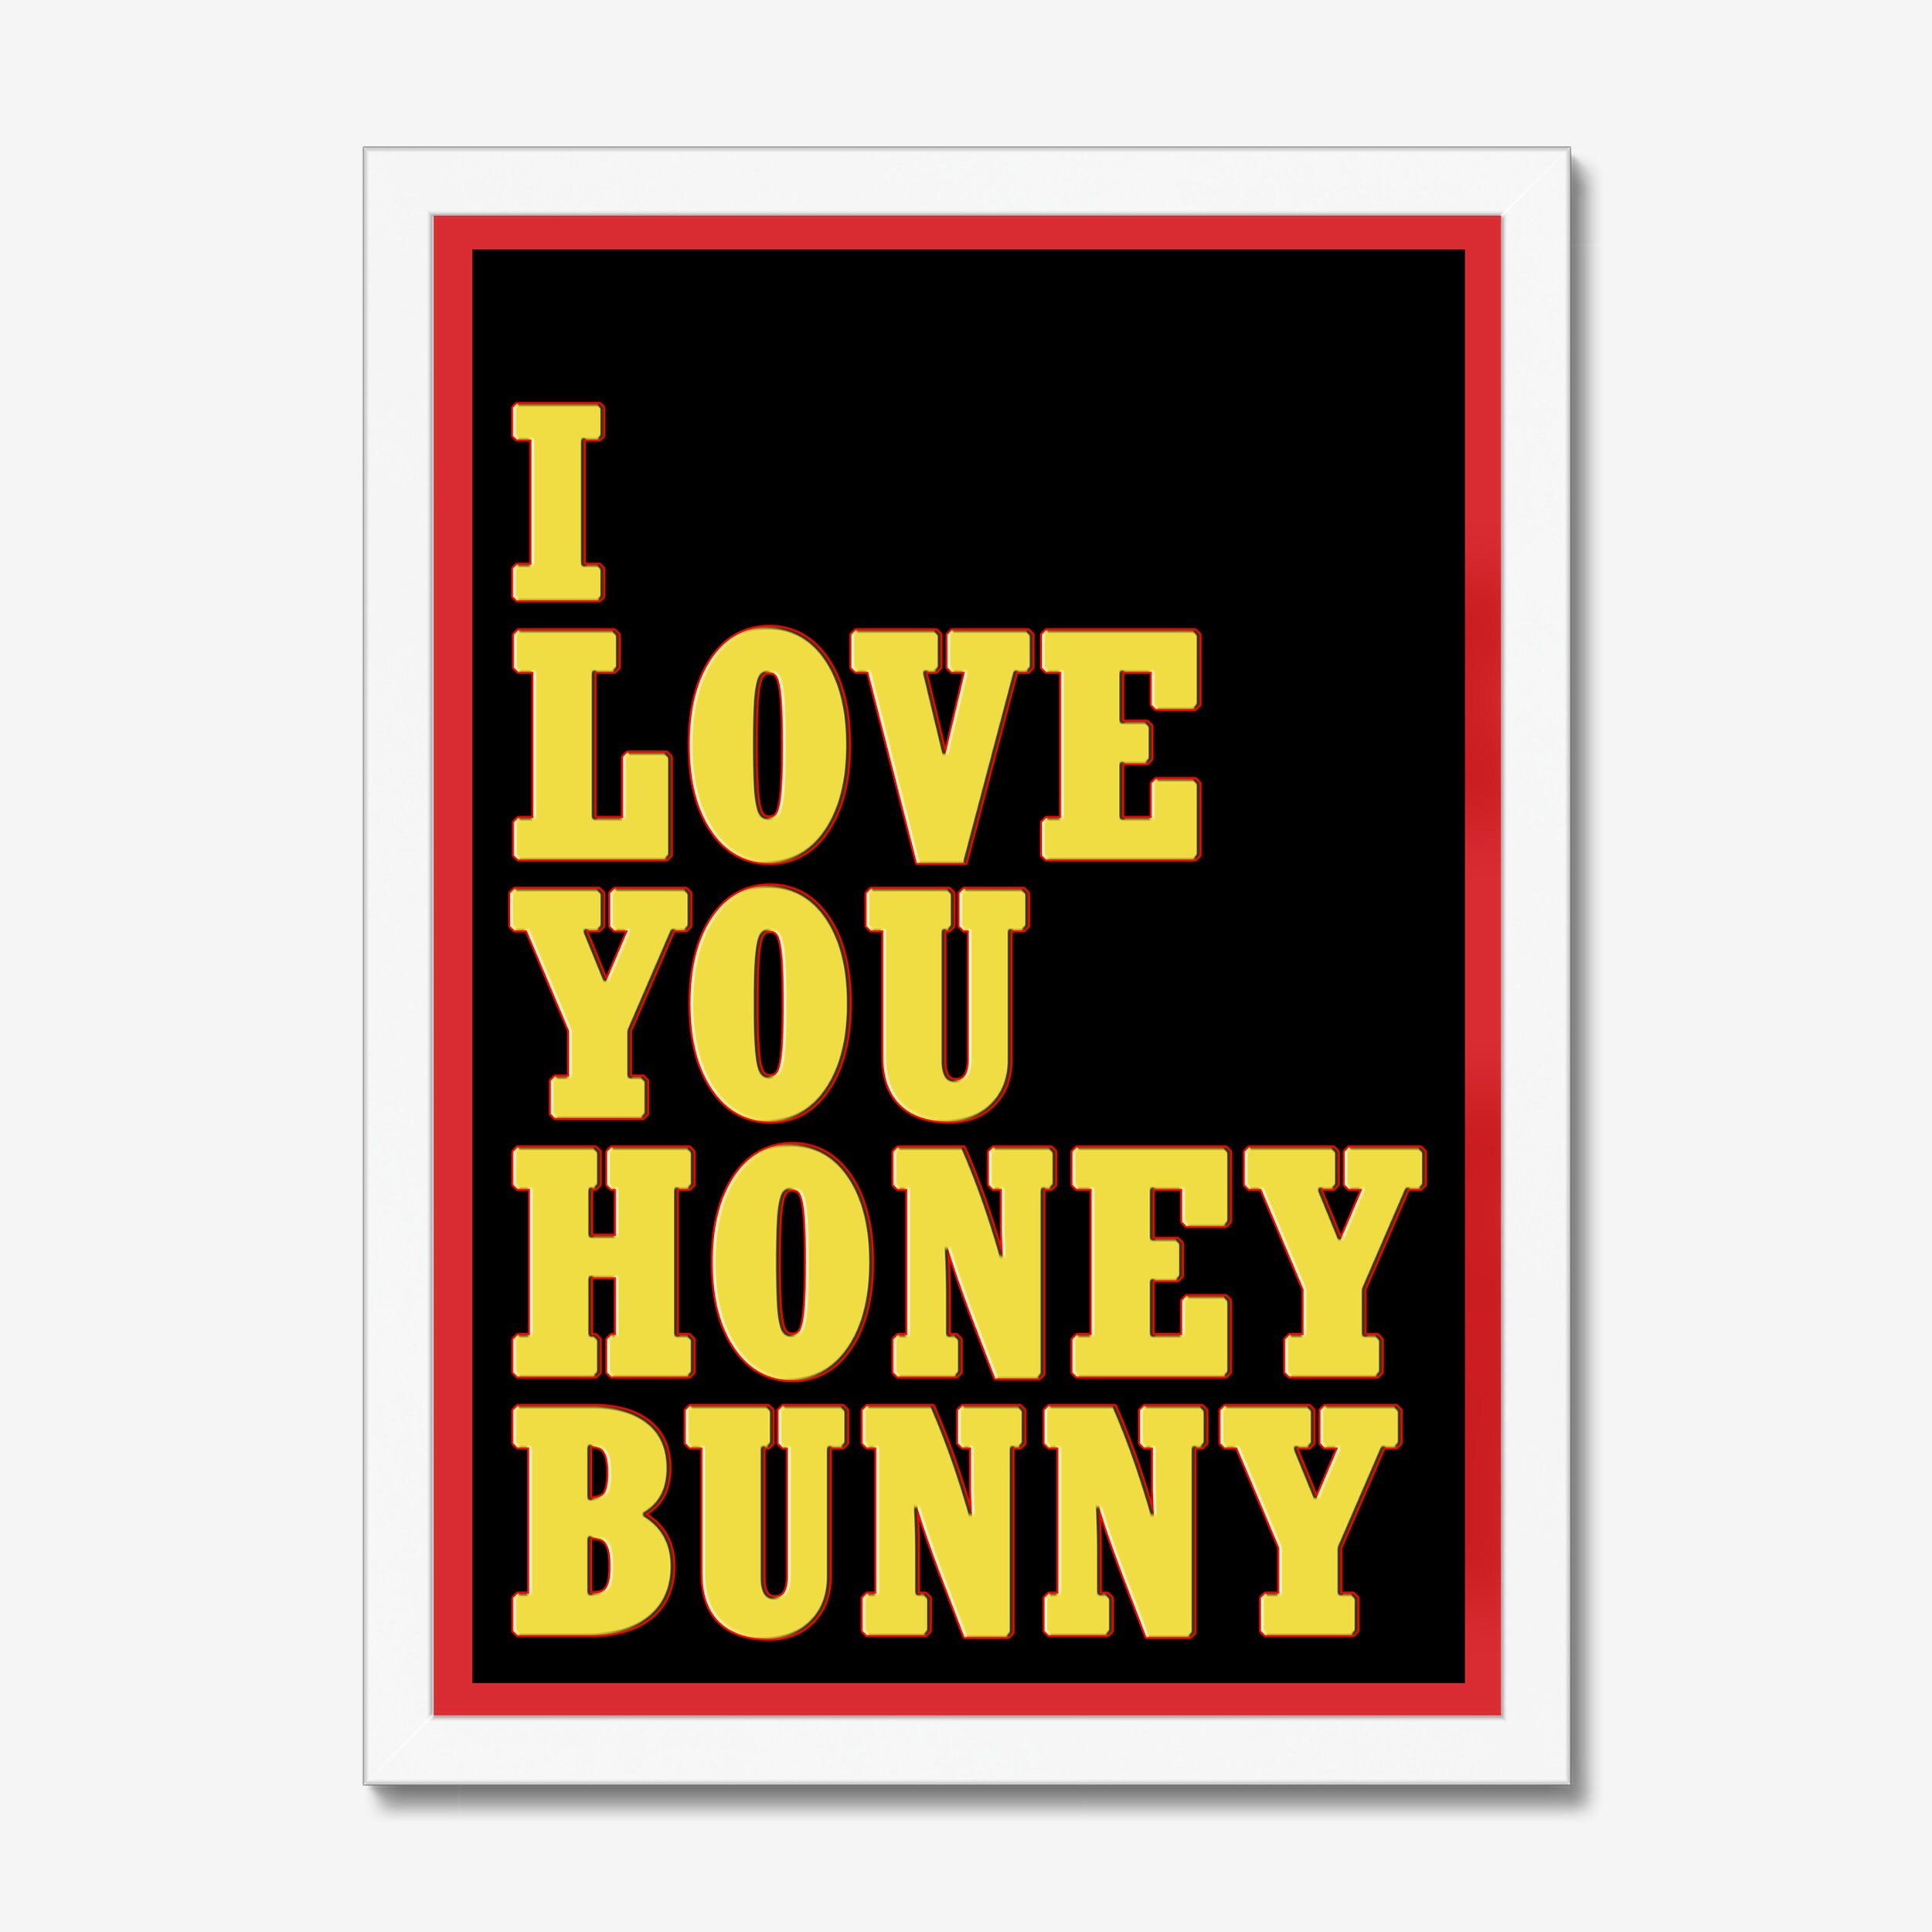 I Love You Honey Bunny Pulp Fiction Print. 